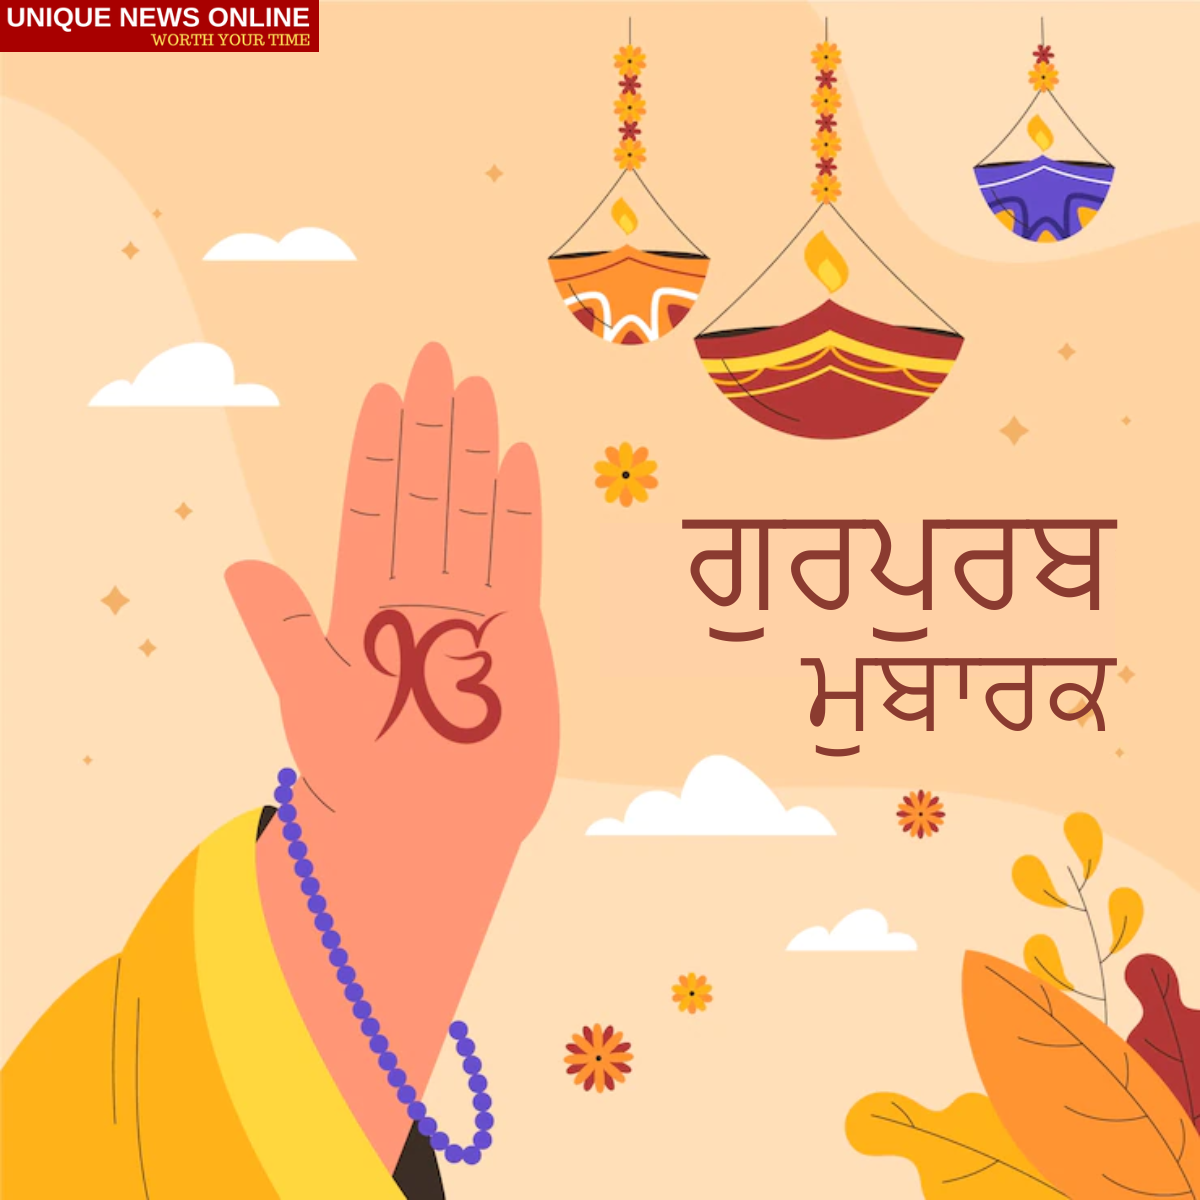 Happy Guru Nanak Jayanti 2022: Gurupurab Wishes in Punjabi, Messages, Greetings, Quotes, HD Images, Sayings, and Shayari